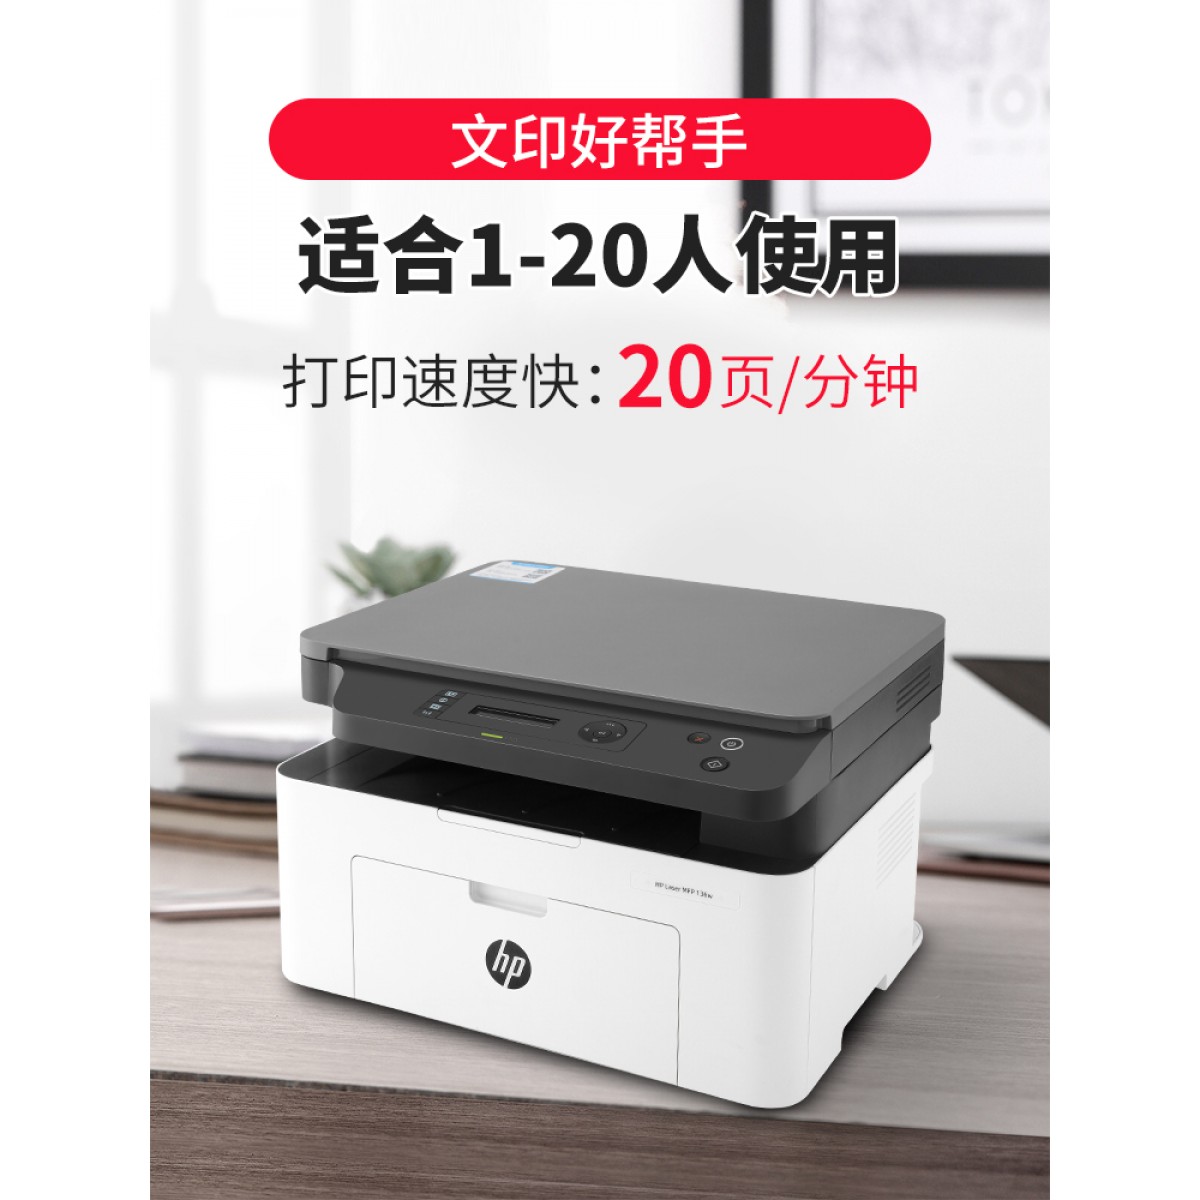 【官方】惠普m136wm黑白激光打印机复印扫描一体机家用办公无线A4